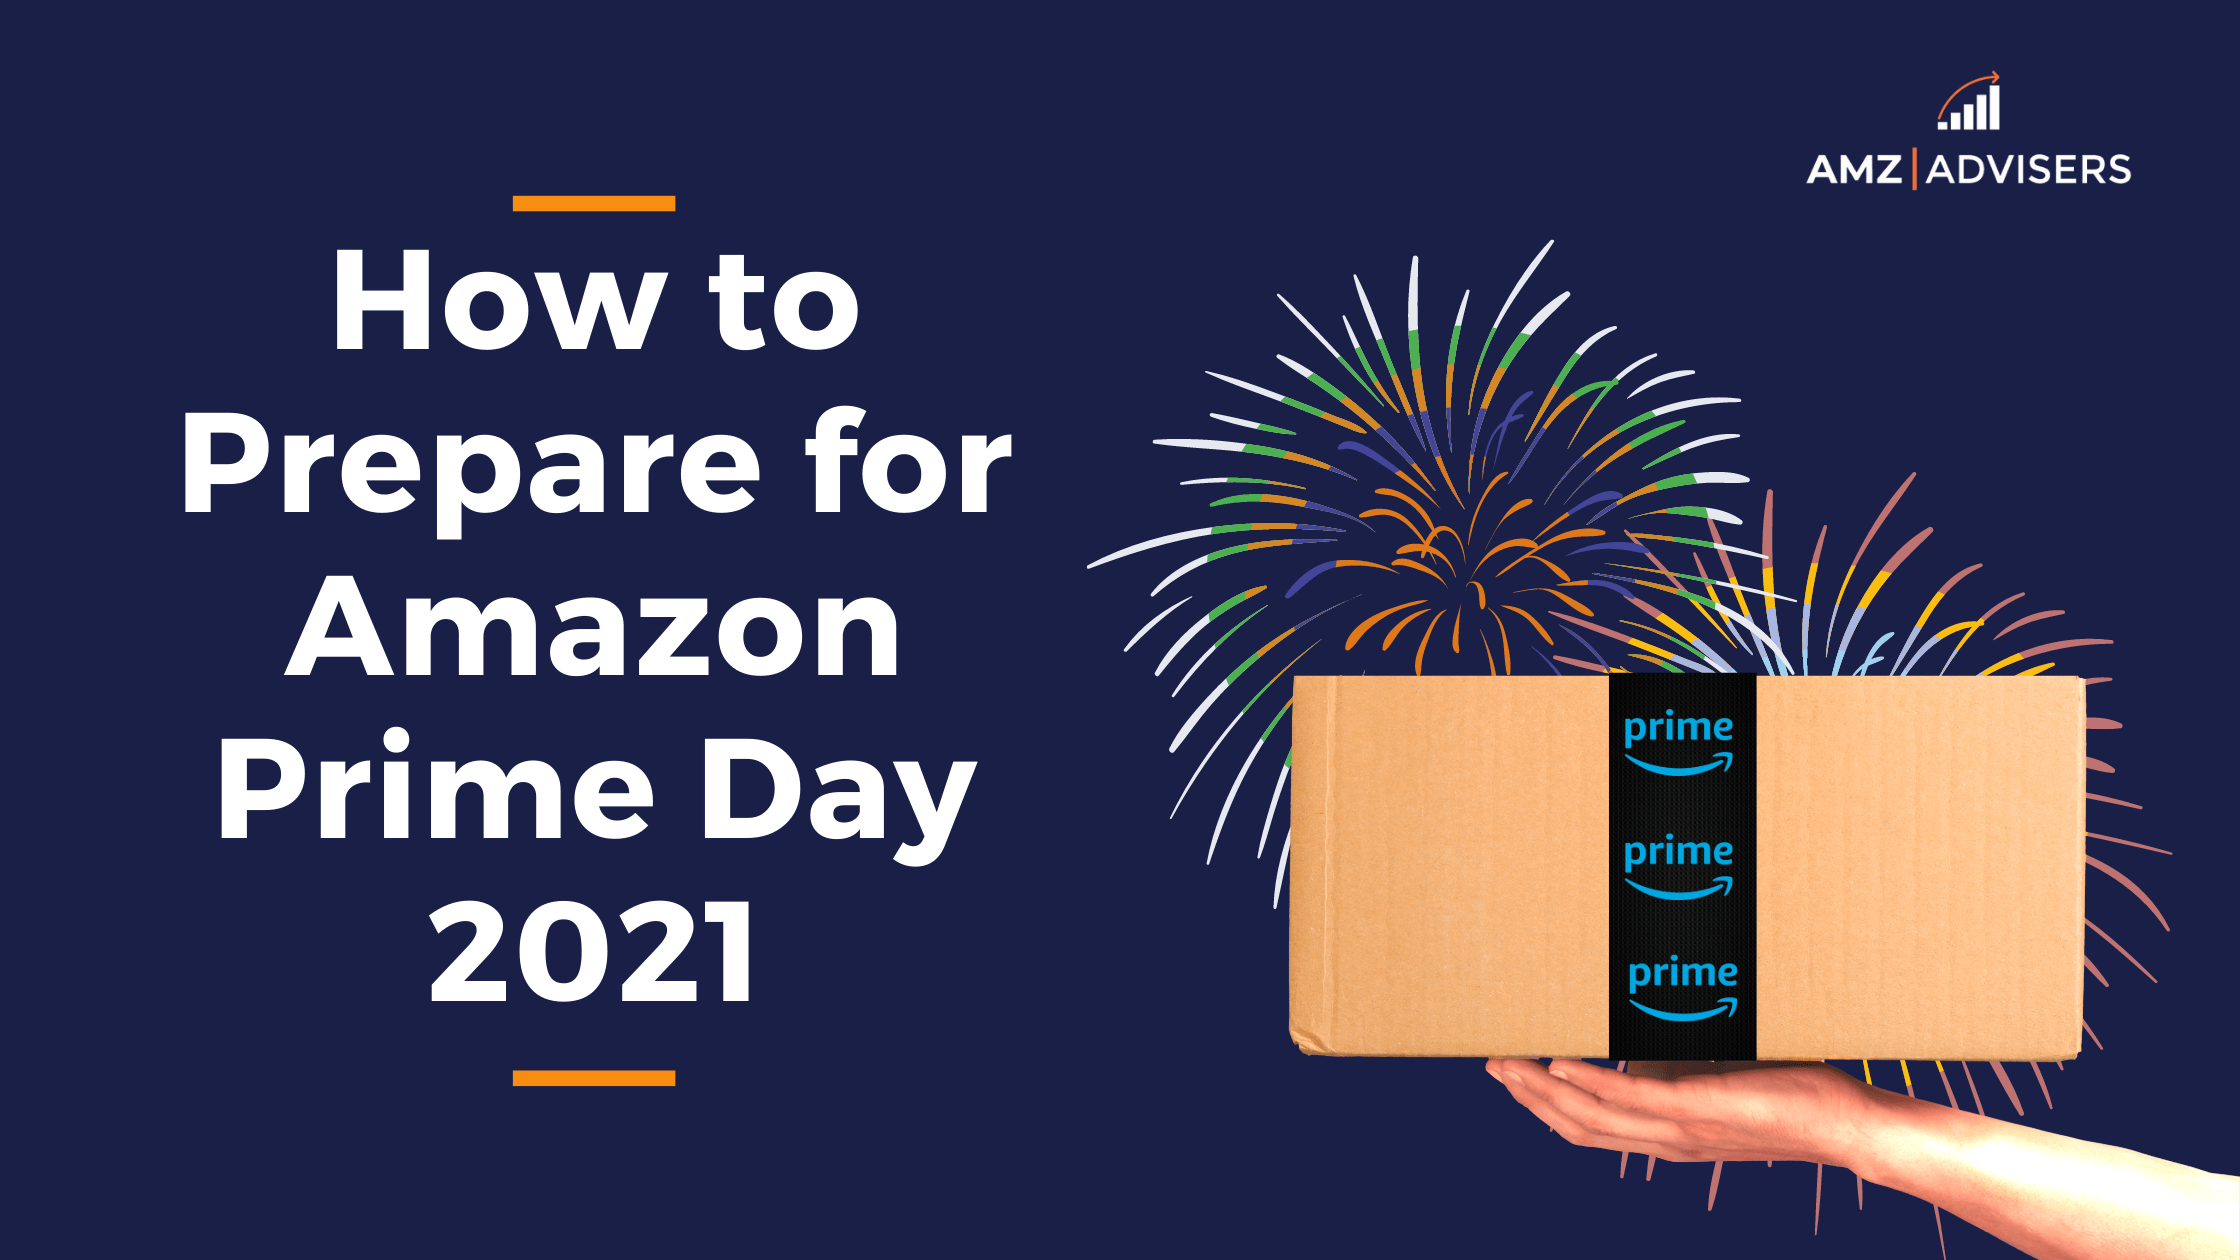 Amazon Prime Day: 10 mea aoga ta'avale e mafai ona e maua i le 50% fa'aitiitiga